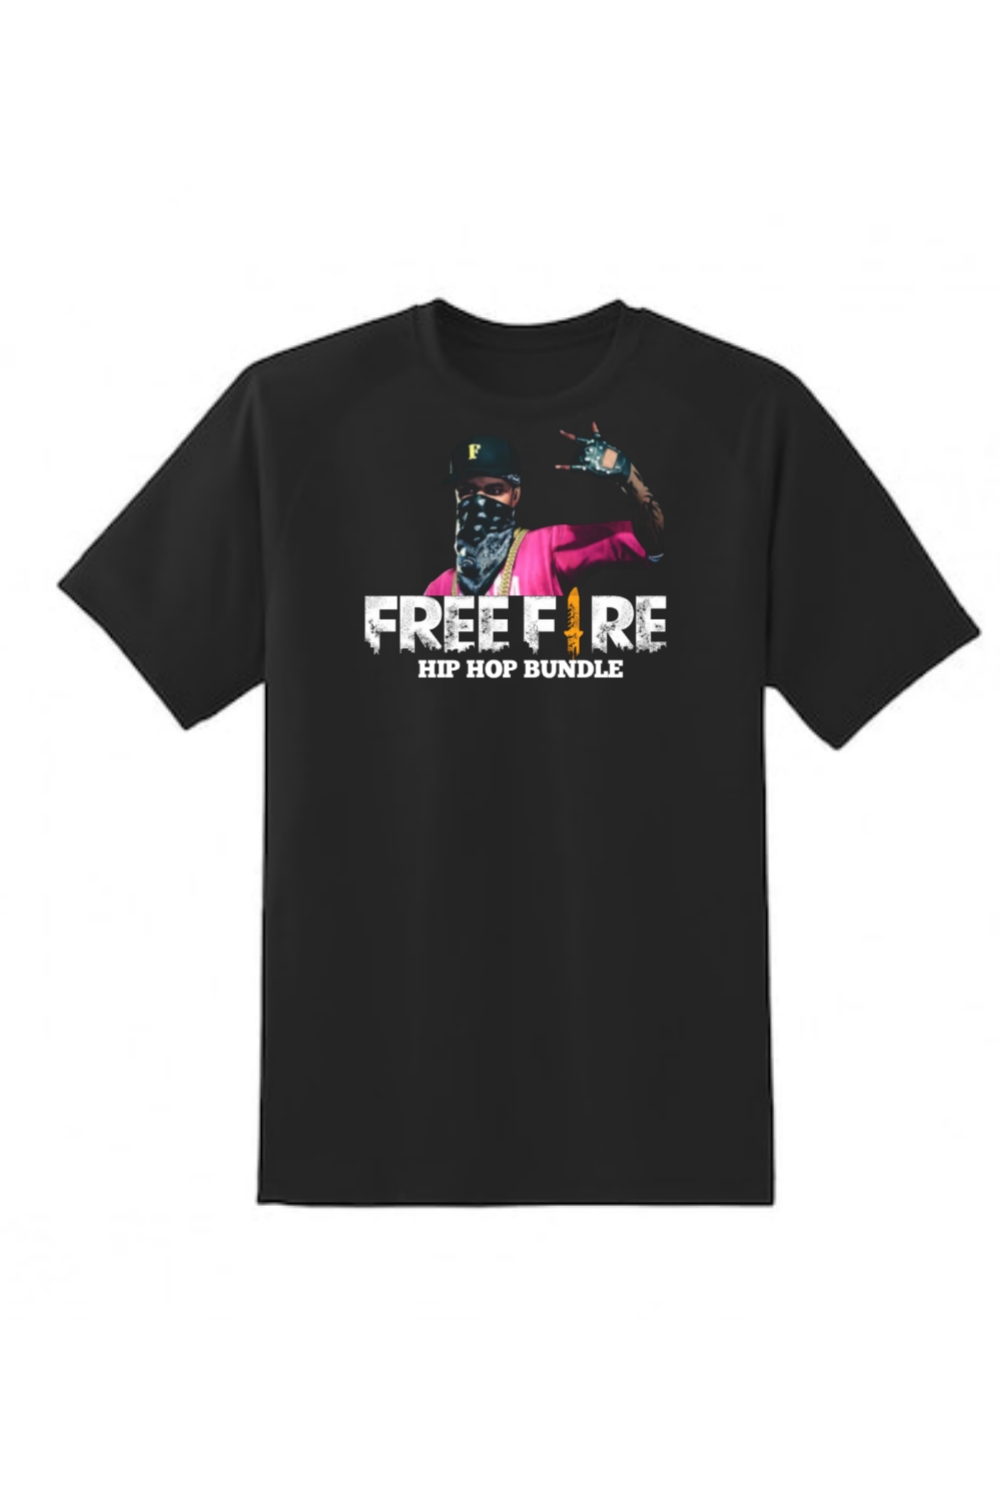 Free fire hip hop bundle T-shirt design pinterest preview image.